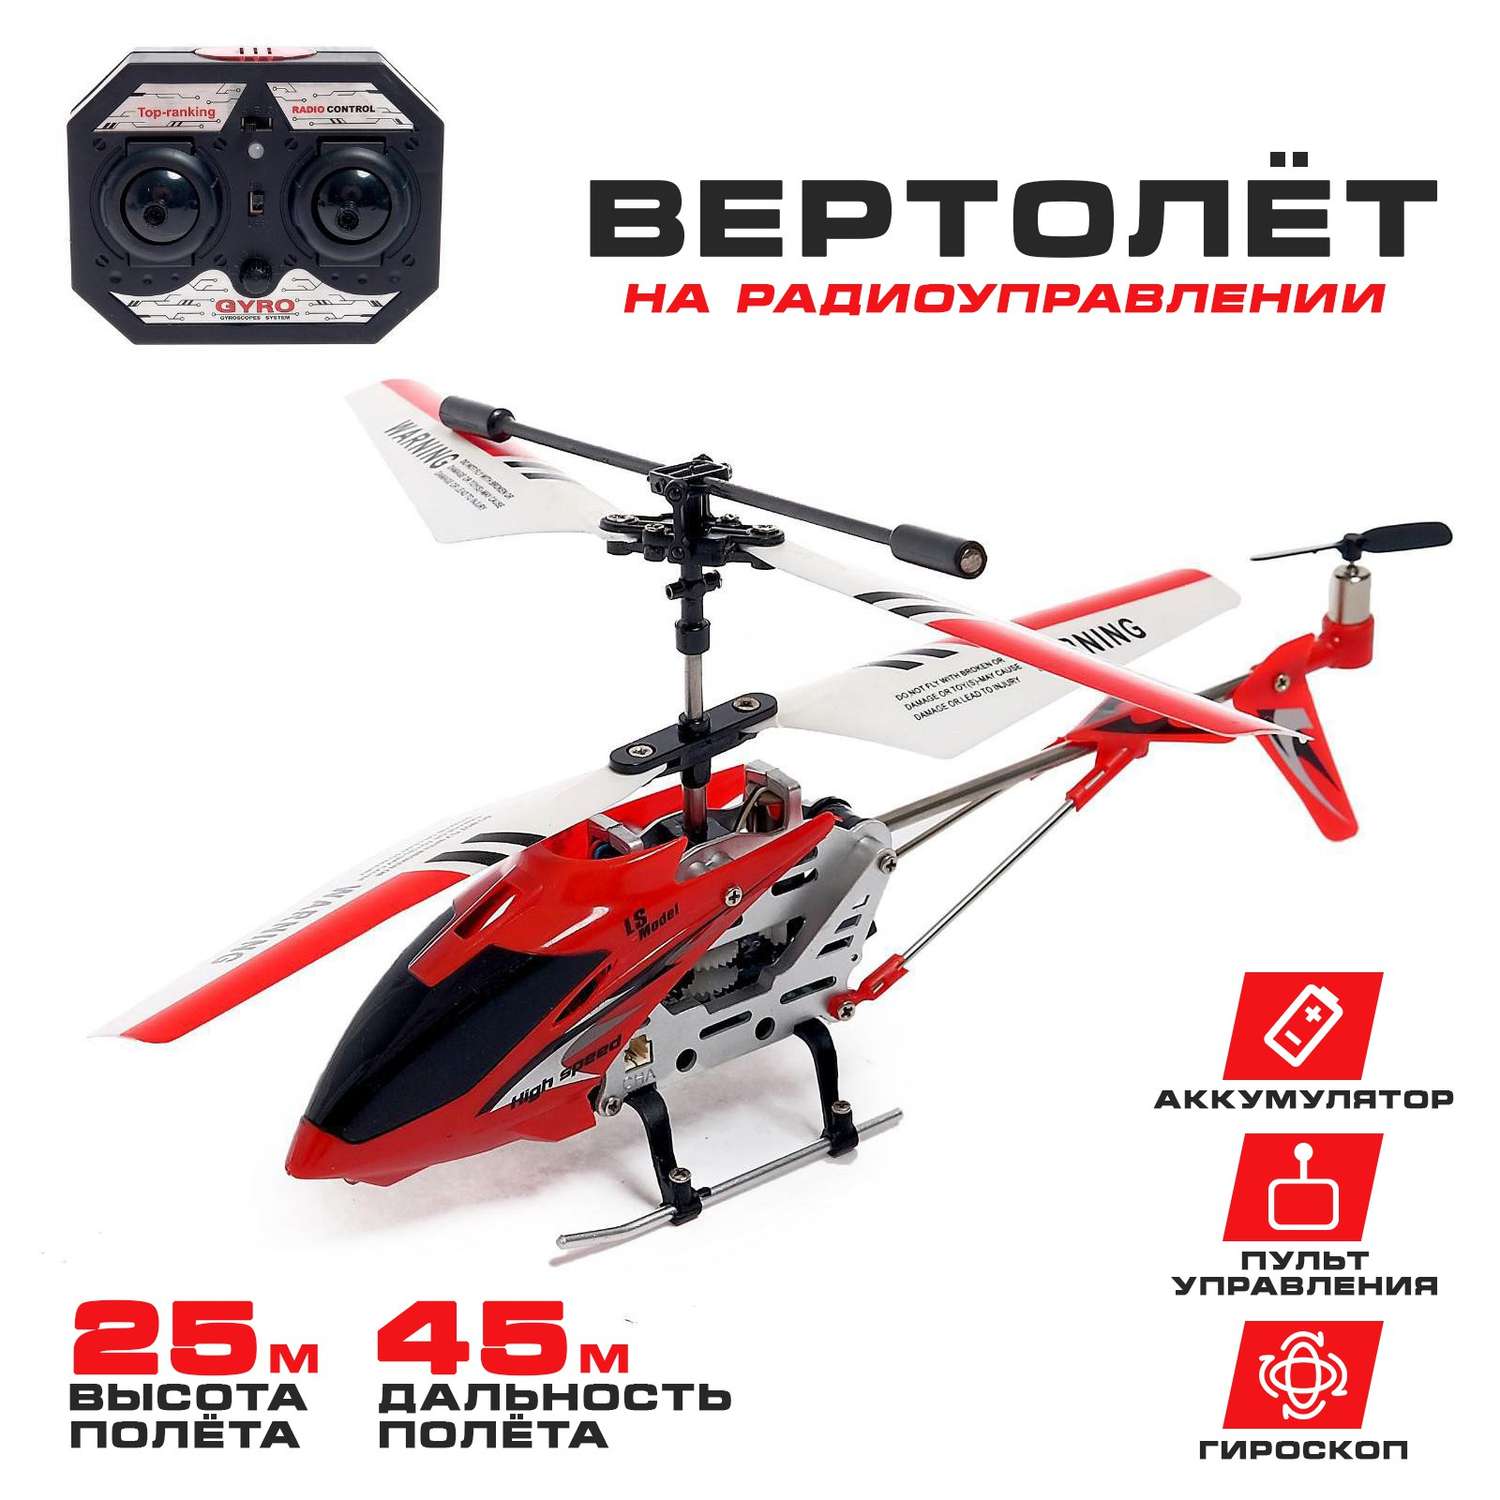 Вертолёт Автоград радиоуправляемый SKY с гироскопом цвет красный - фото 1